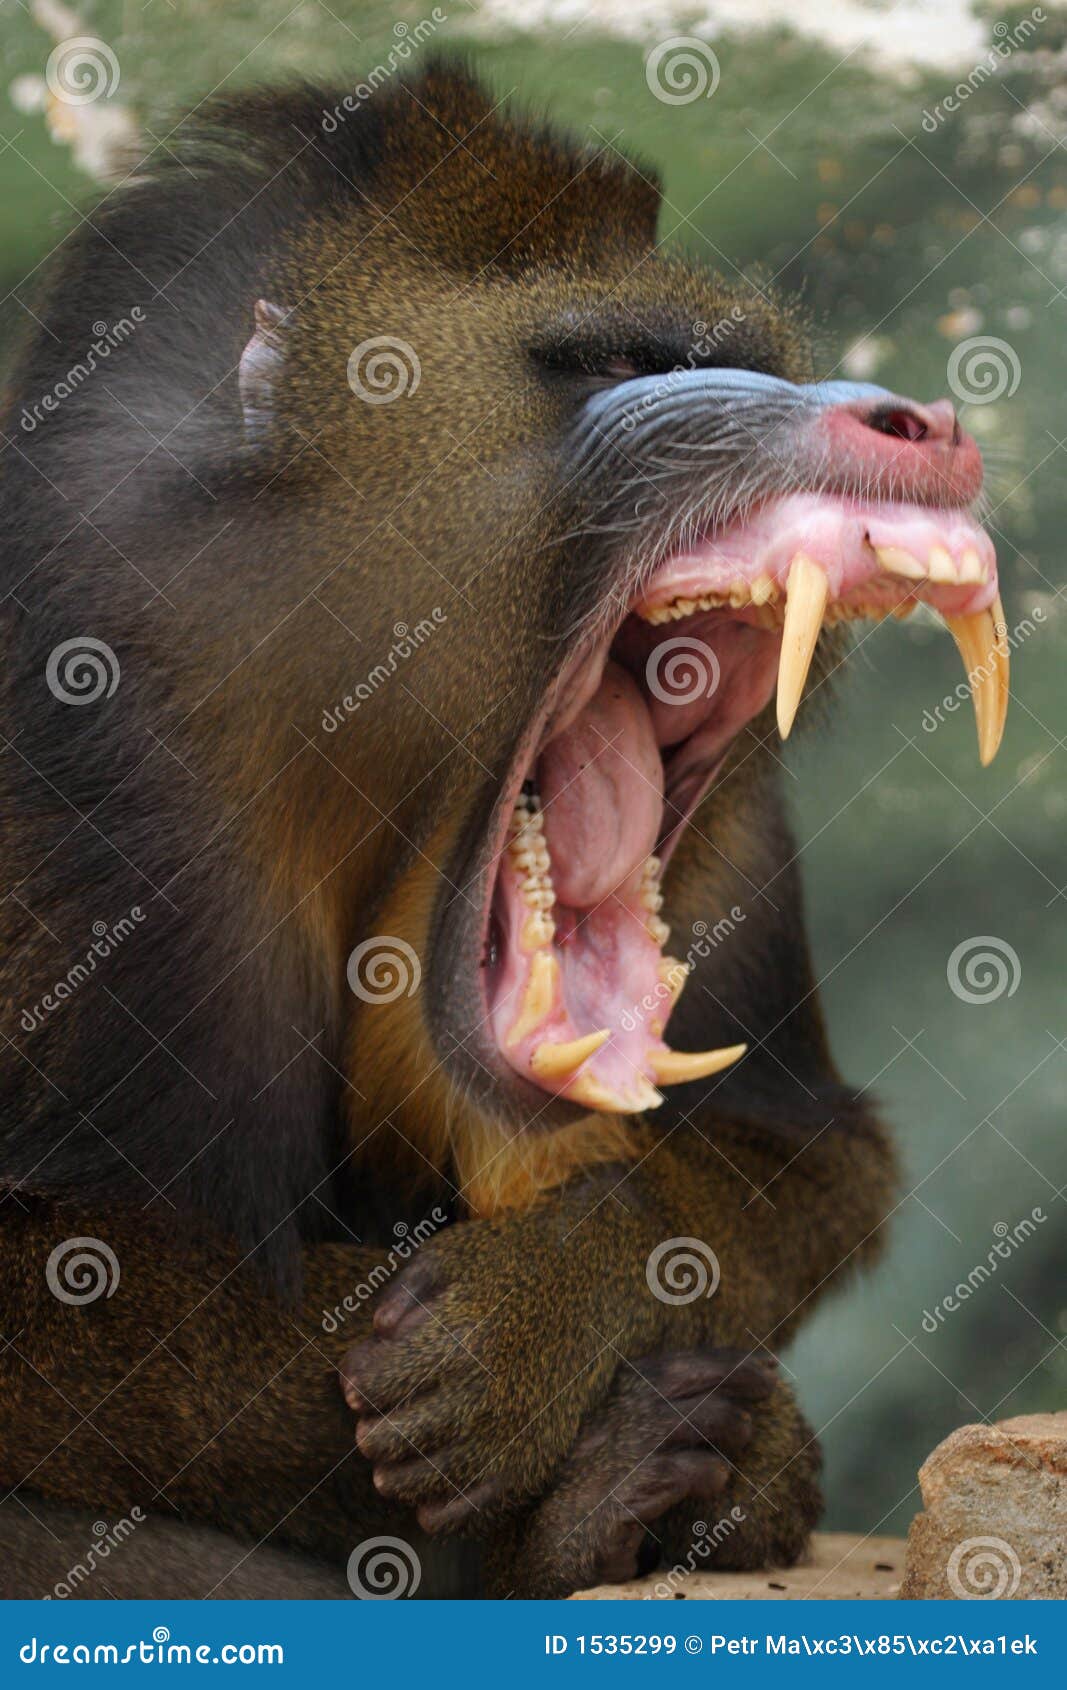 Monkey Mandrill stock image. Image of yellow, monkey, bare - 1535299